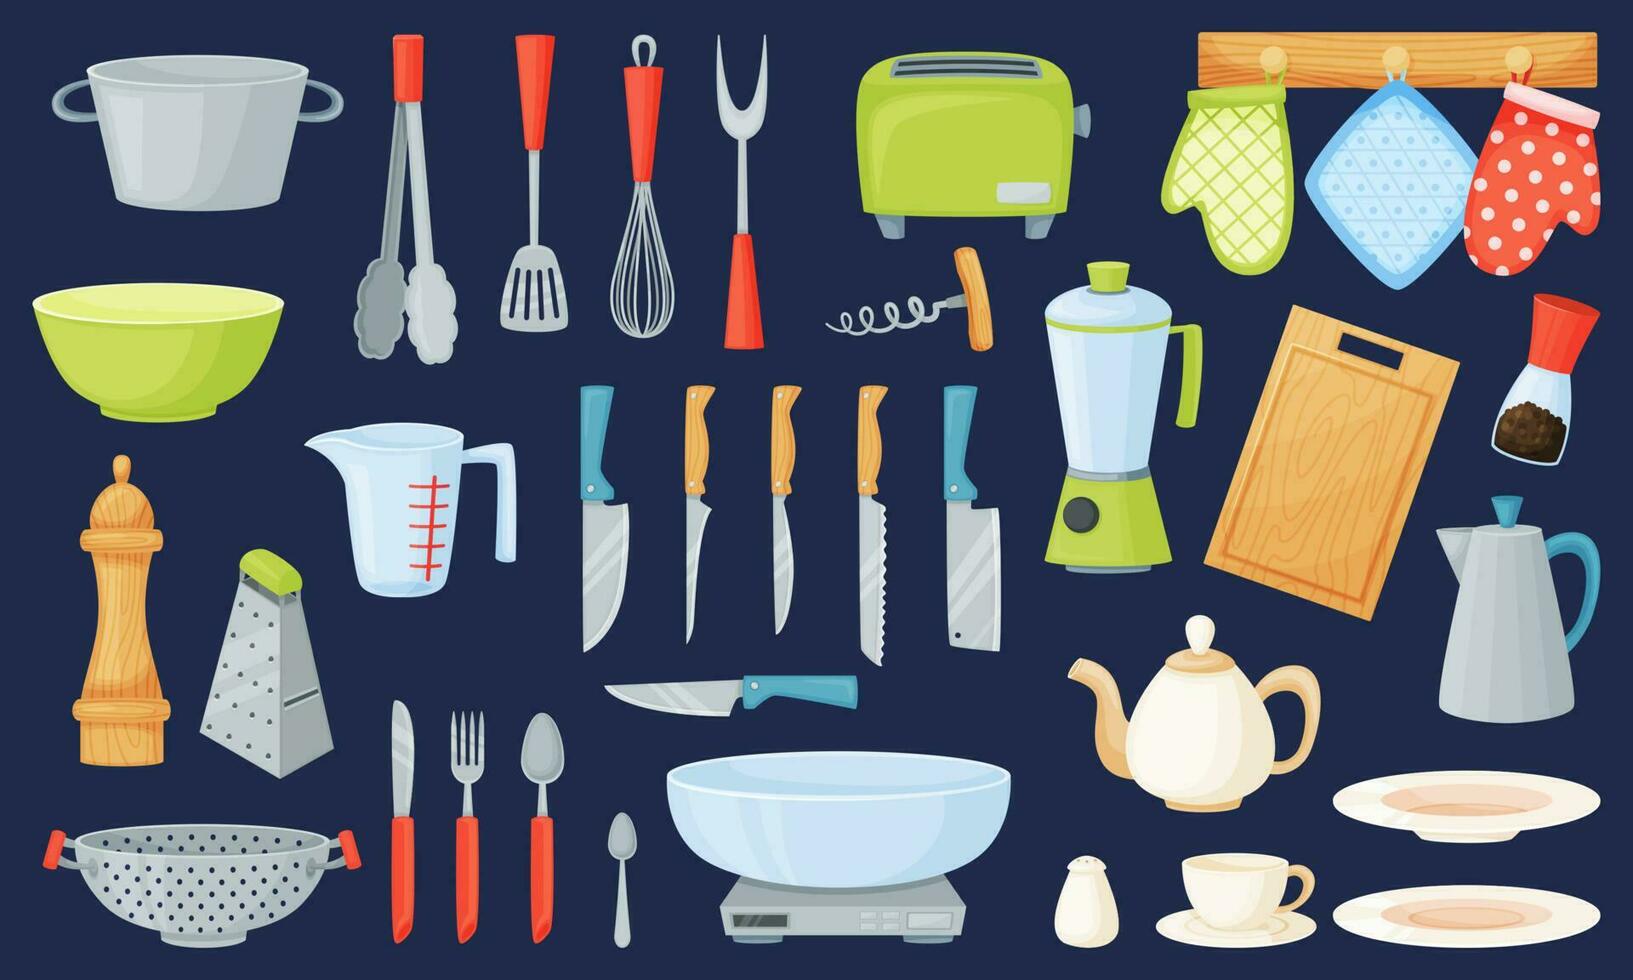 tecknad serie kök redskap och verktyg, matlagning Utrustning, köksutrustning. bestick, pott, kastrull, kopp, skål, kokkärl element vektor uppsättning